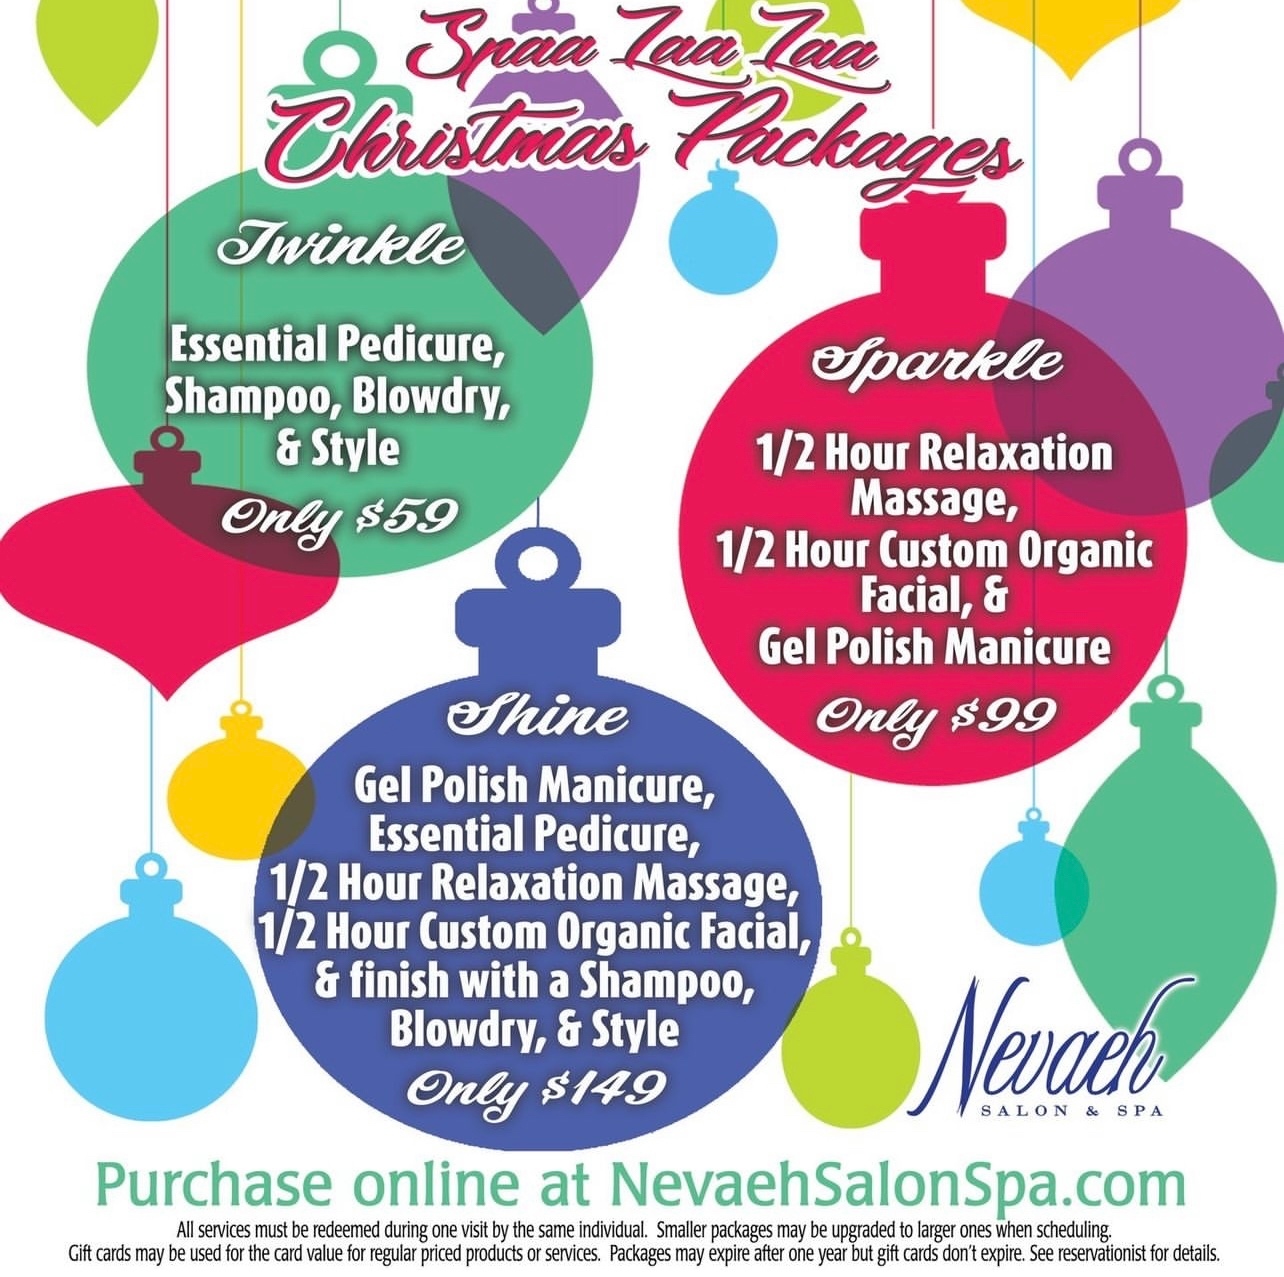 Nevaeh Salon & Spa of Minerva 404 E Lincolnway, Minerva Ohio 44657